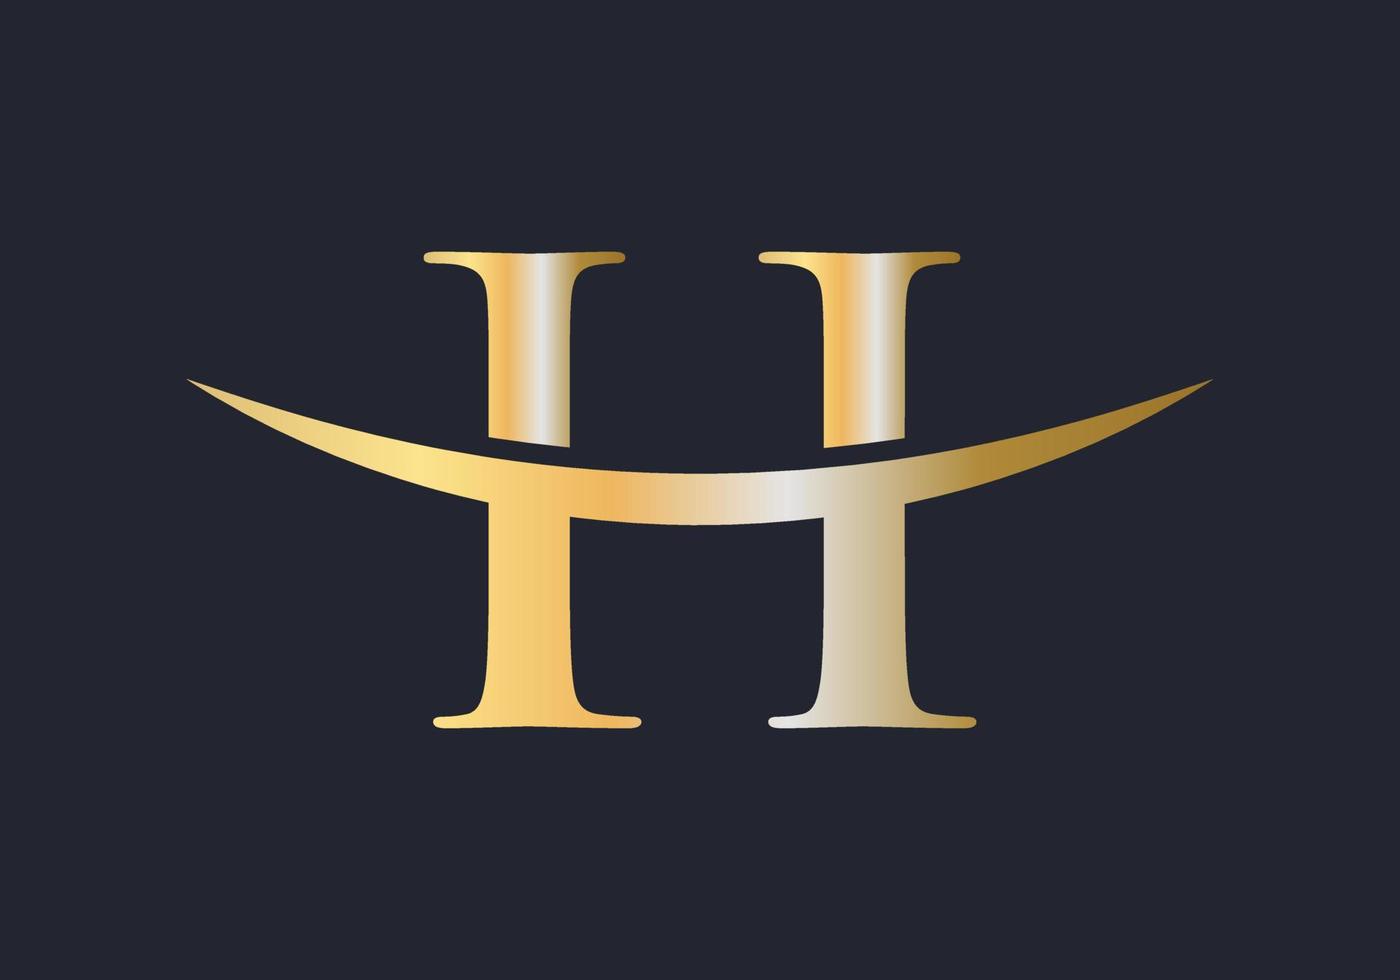 buchstabe h logo design für geschäfts- und unternehmensidentität vektor